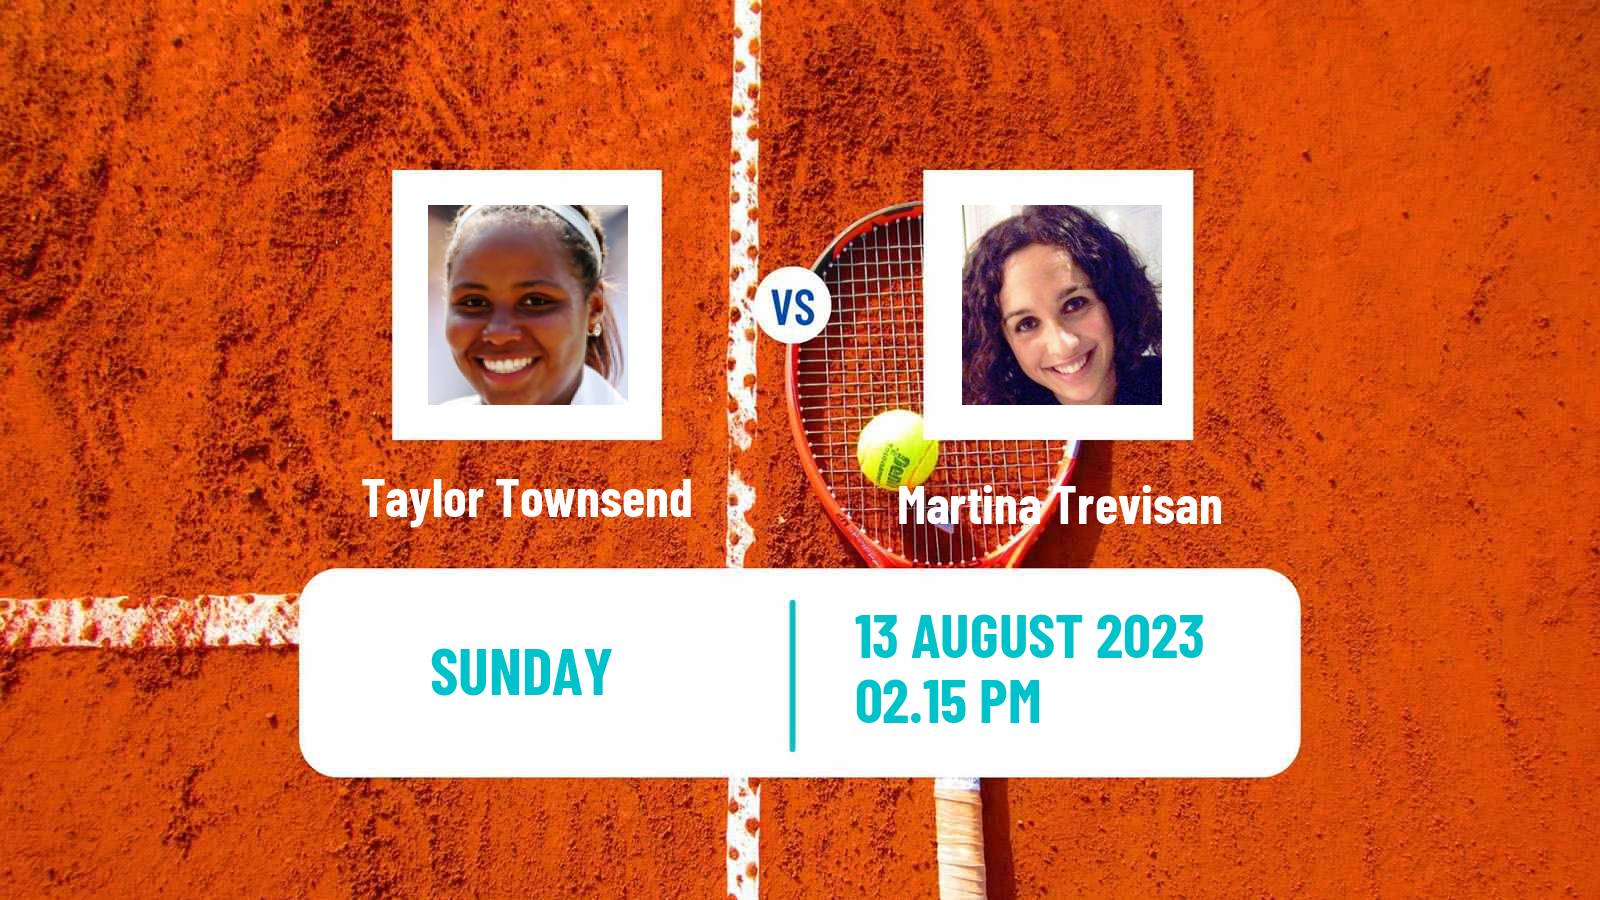 Tennis WTA Cincinnati Taylor Townsend - Martina Trevisan